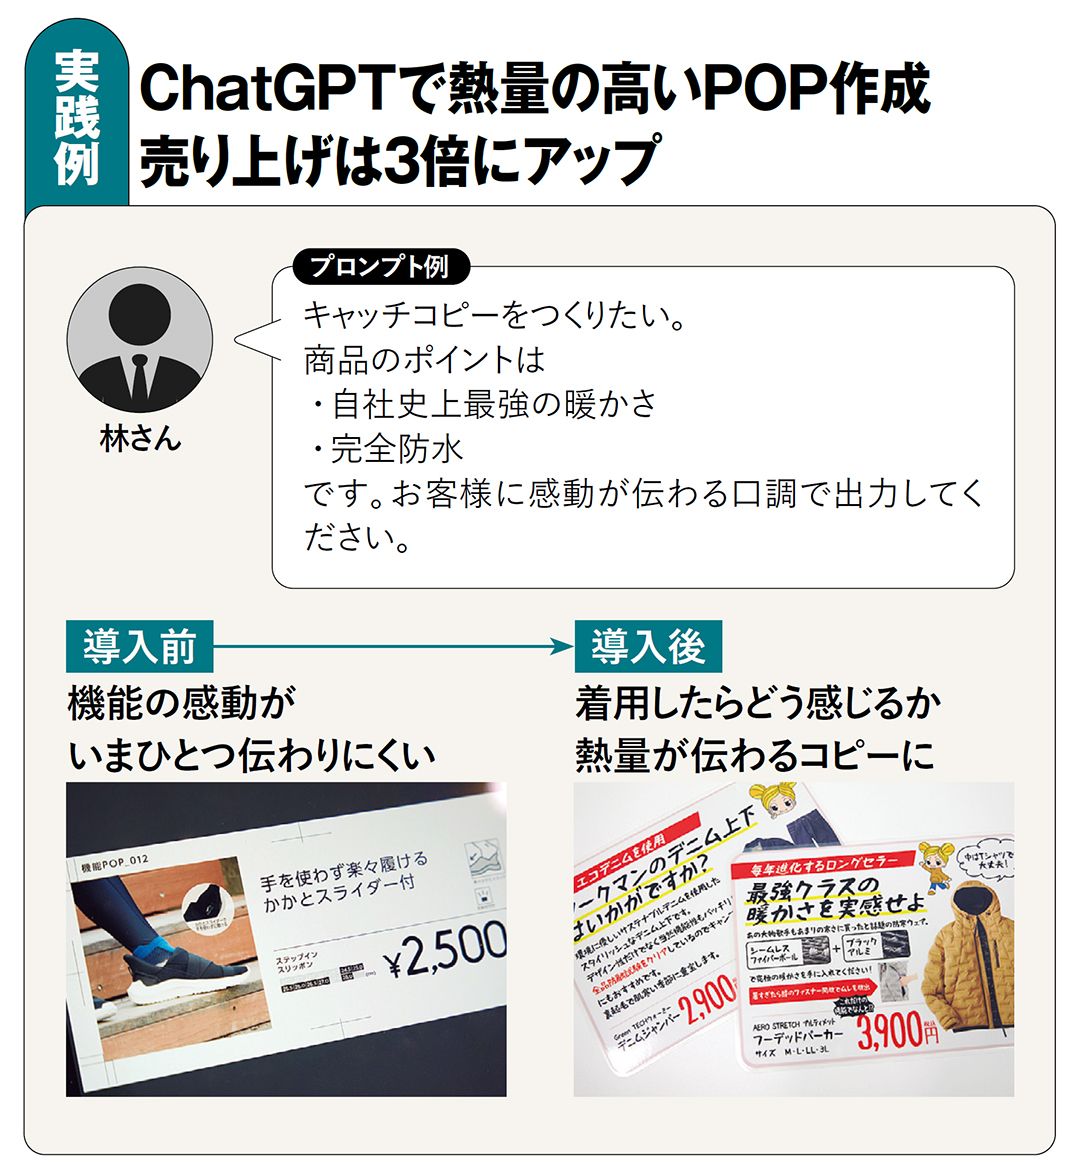 【図表】実践例　ChatGPTで熱量の高いPOP作成 売り上げは3倍にアップ